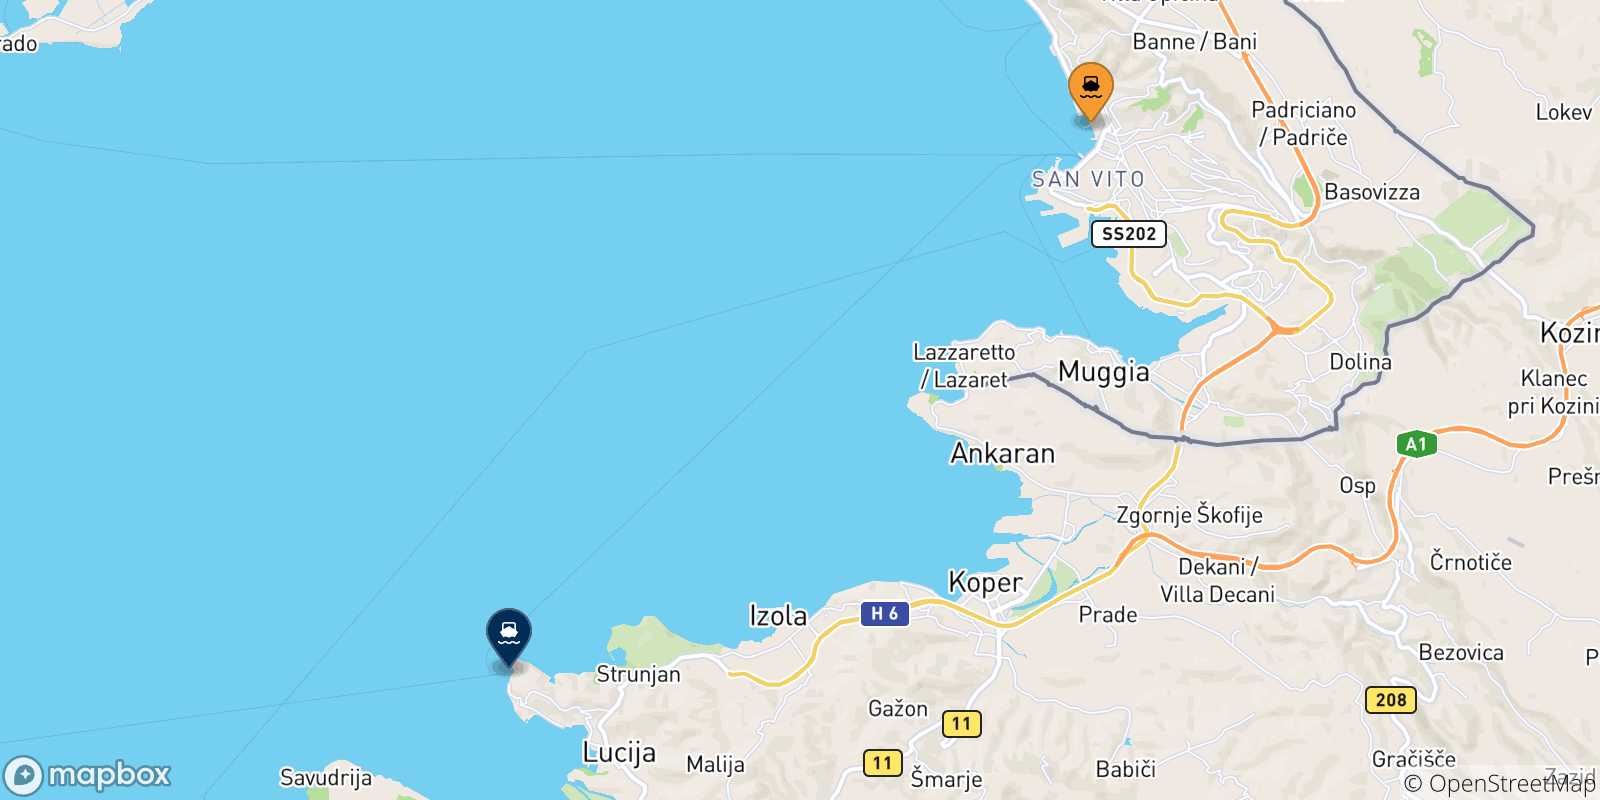 Mappa delle possibili rotte tra Trieste e la Slovenia